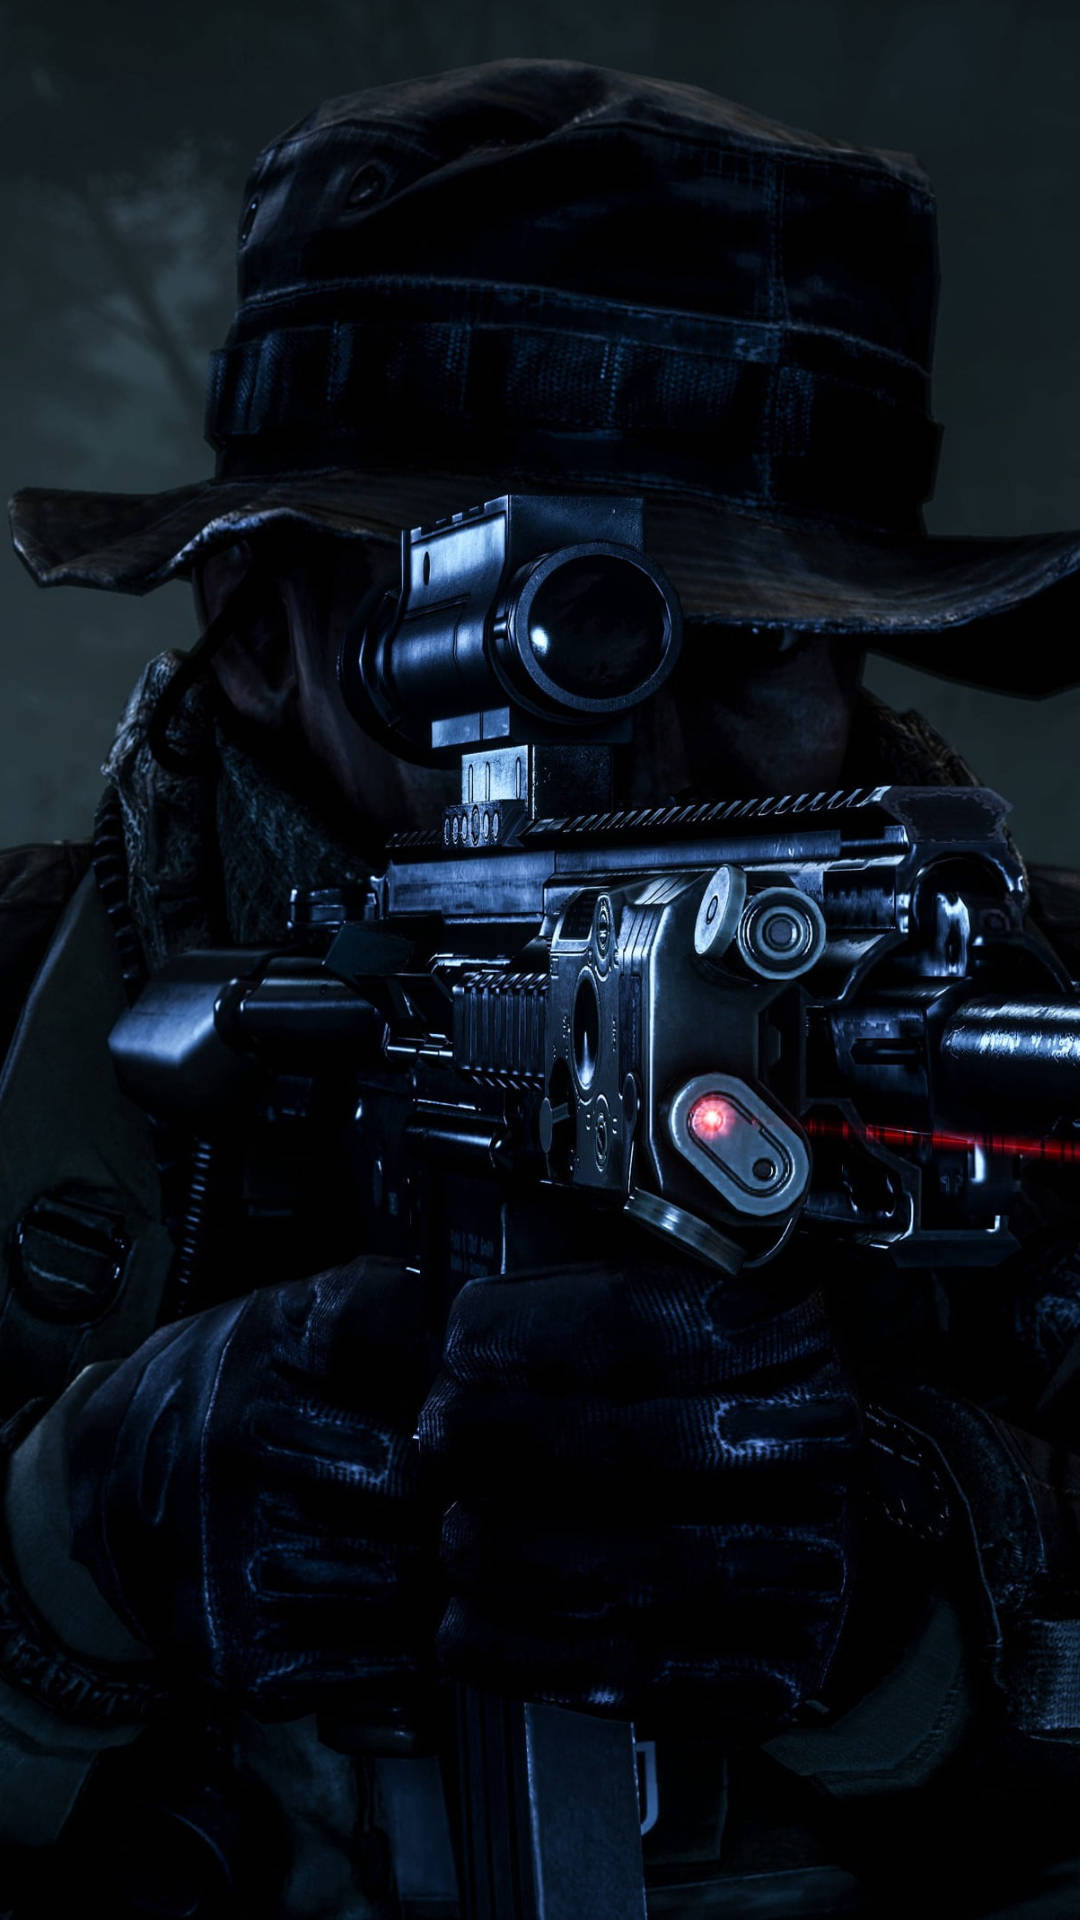 Papelde Parede De Celular Do Battlefield 4 Com Um Close-up De Um Atirador. Papel de Parede